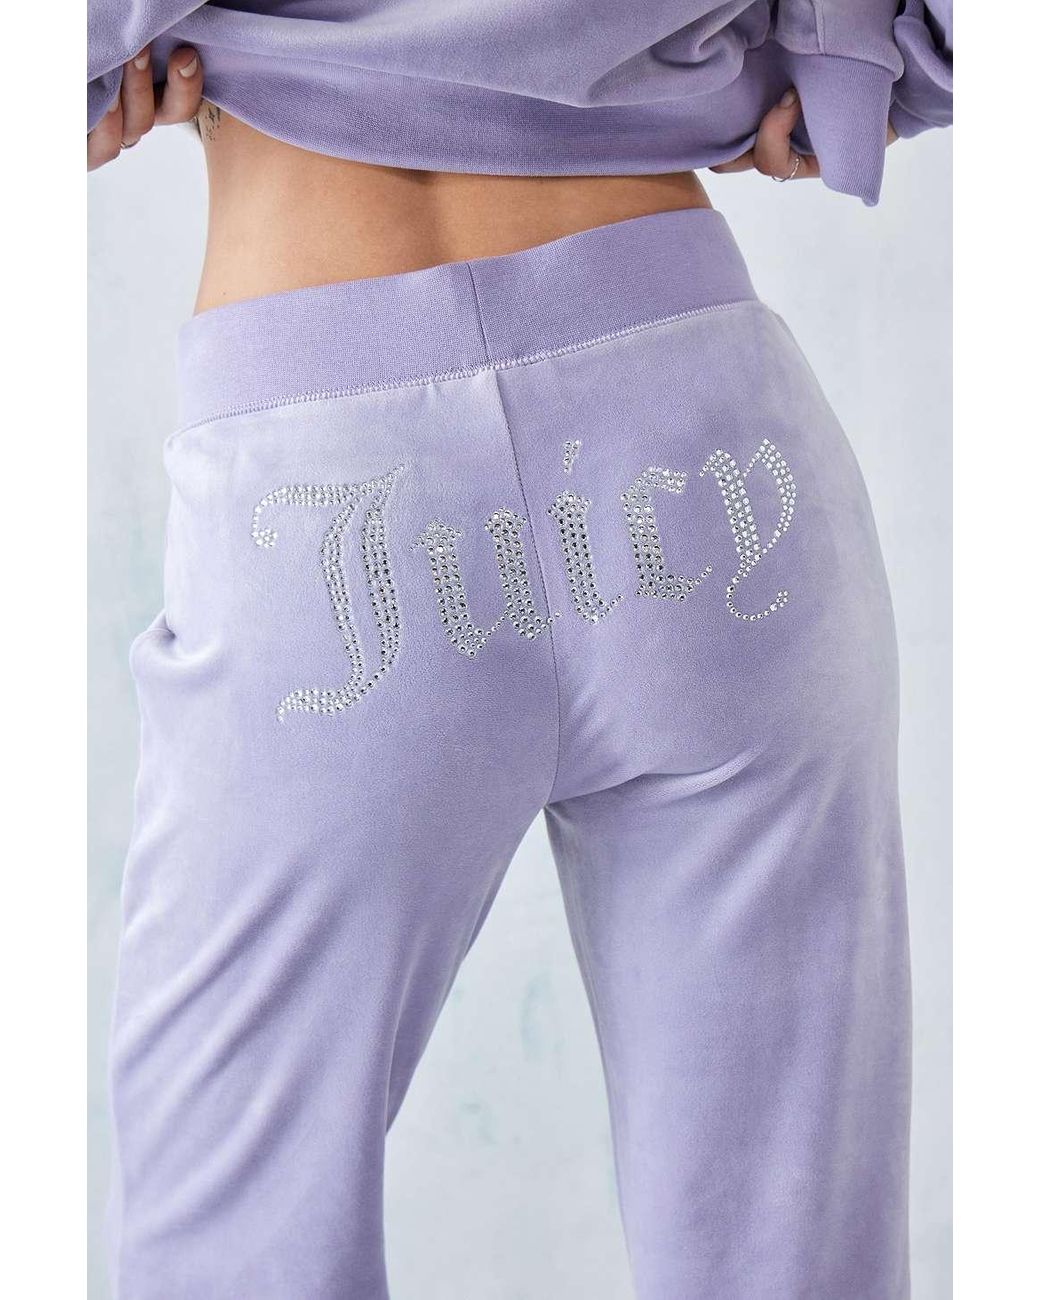 Juicy Couture, Pants & Jumpsuits, Juicy Couture Set Xxl Lilac Sky Color